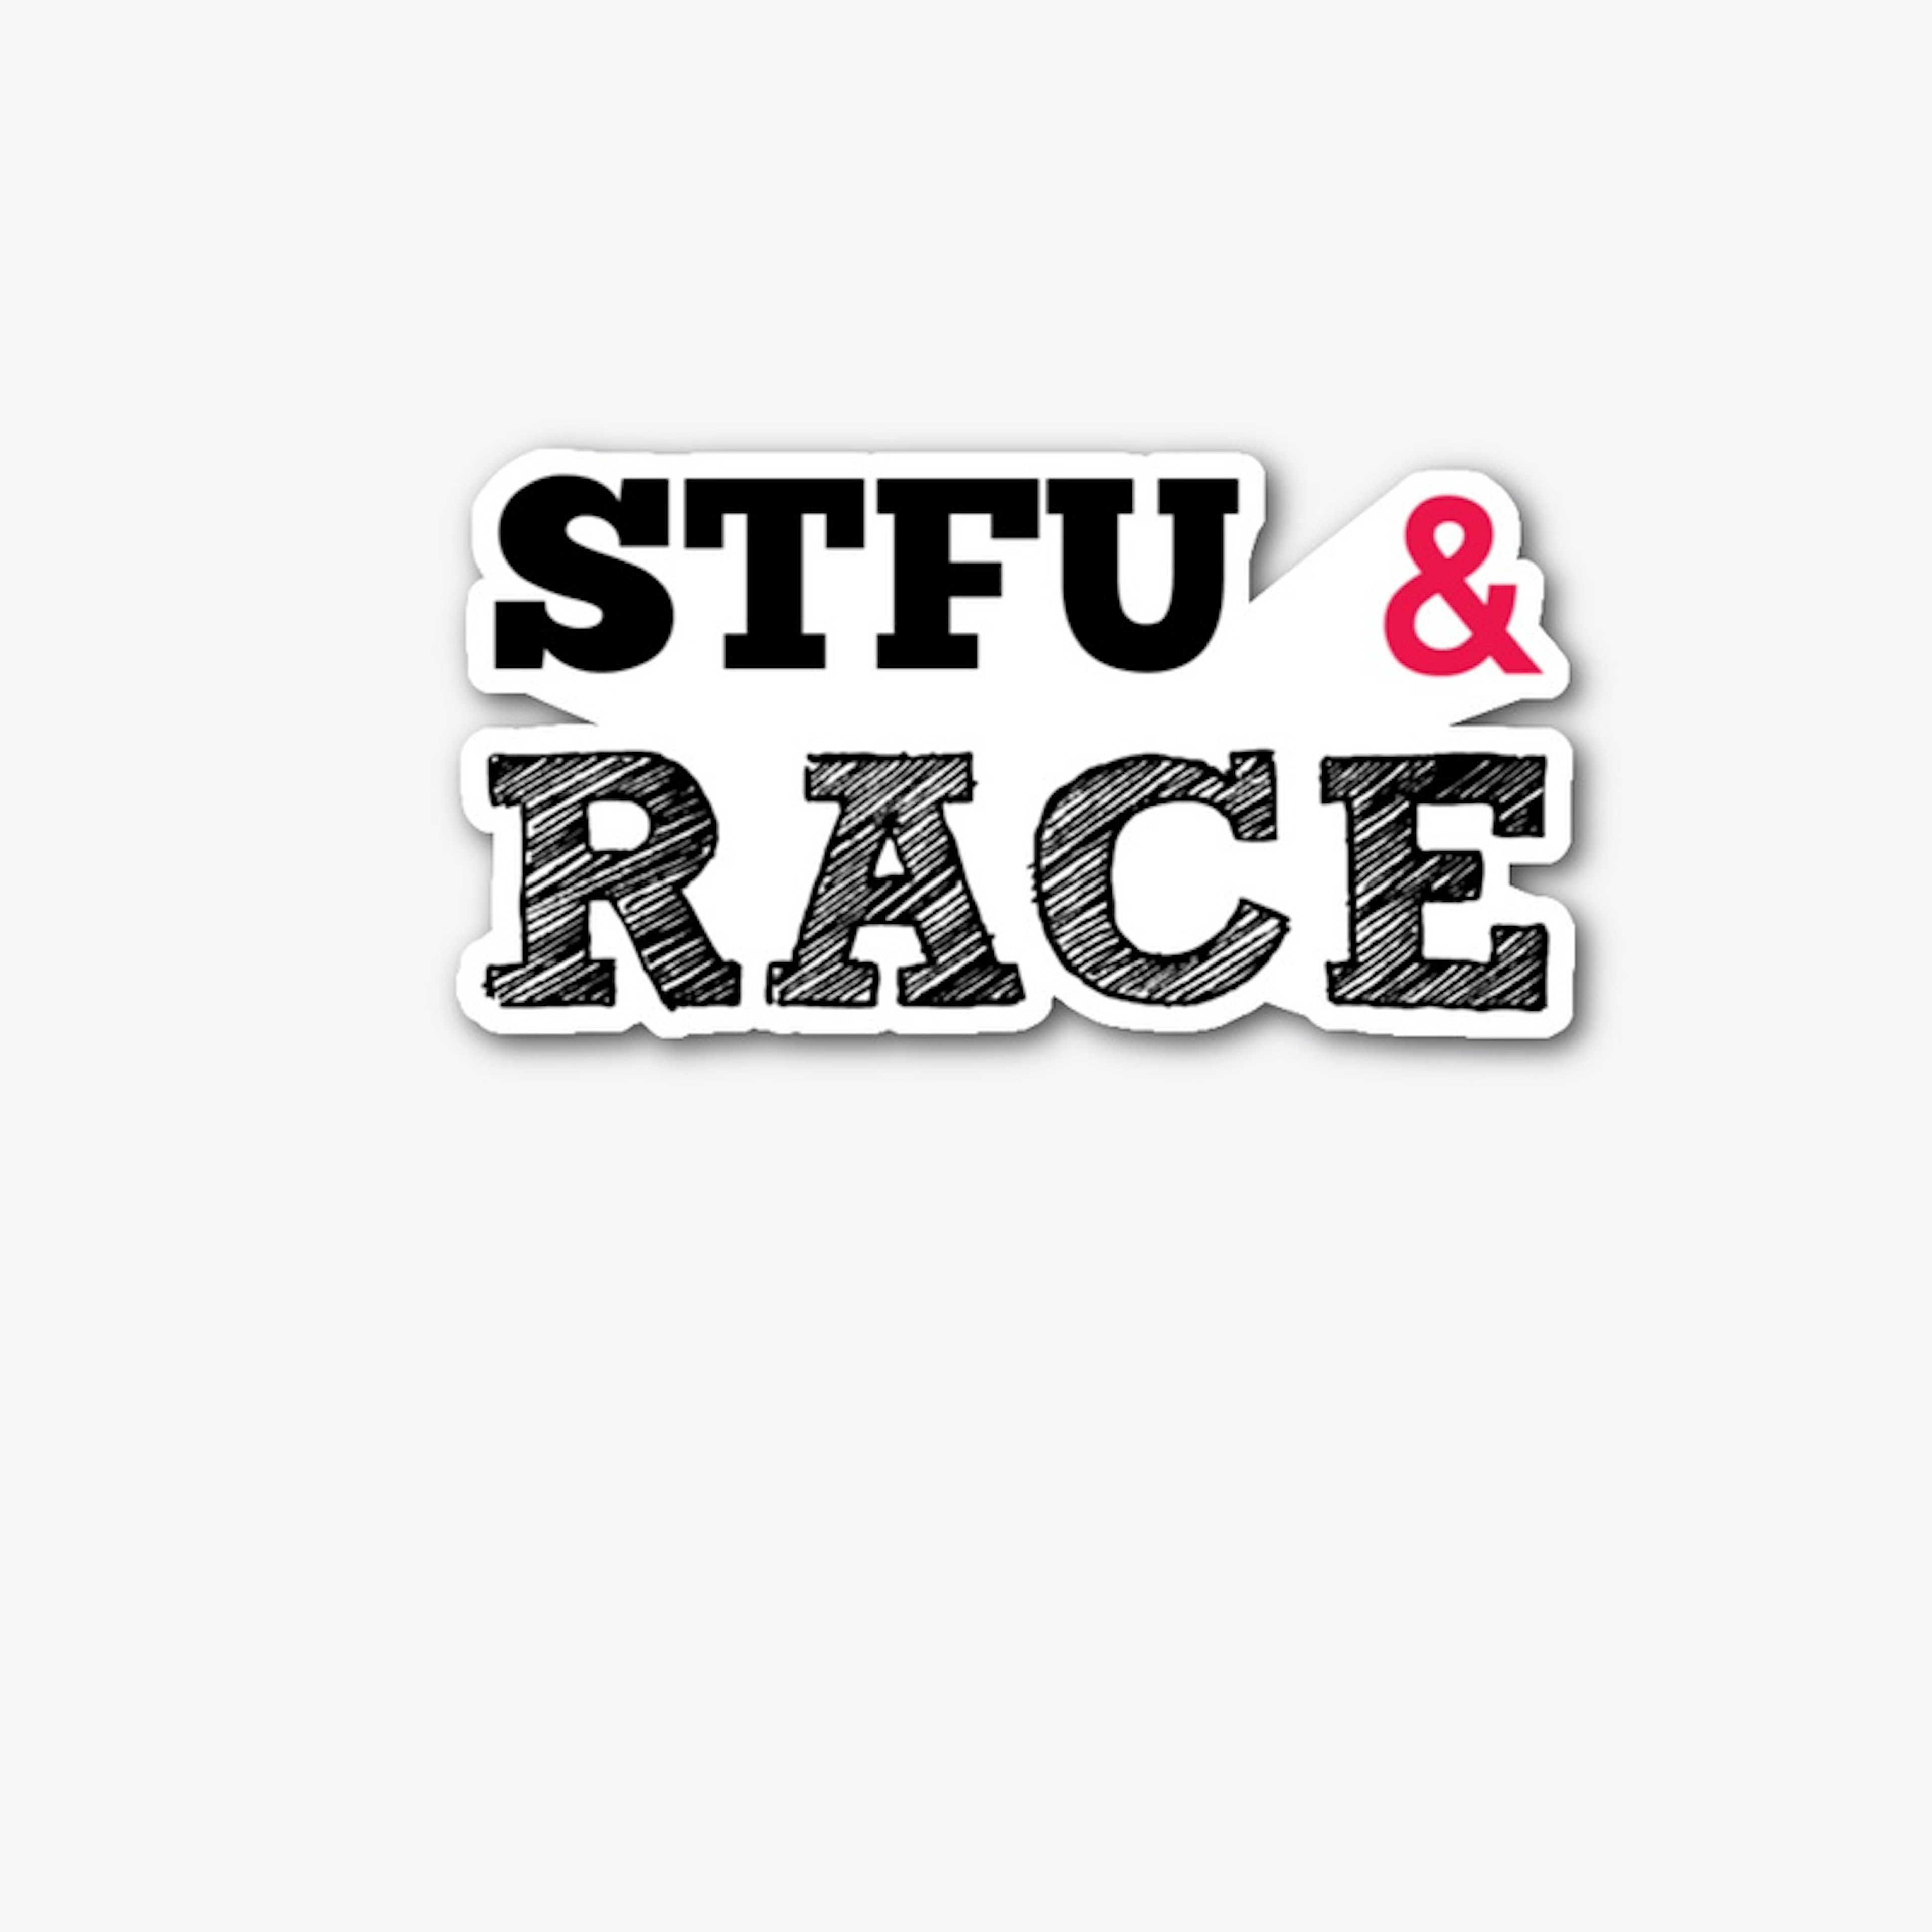 STFU & Race